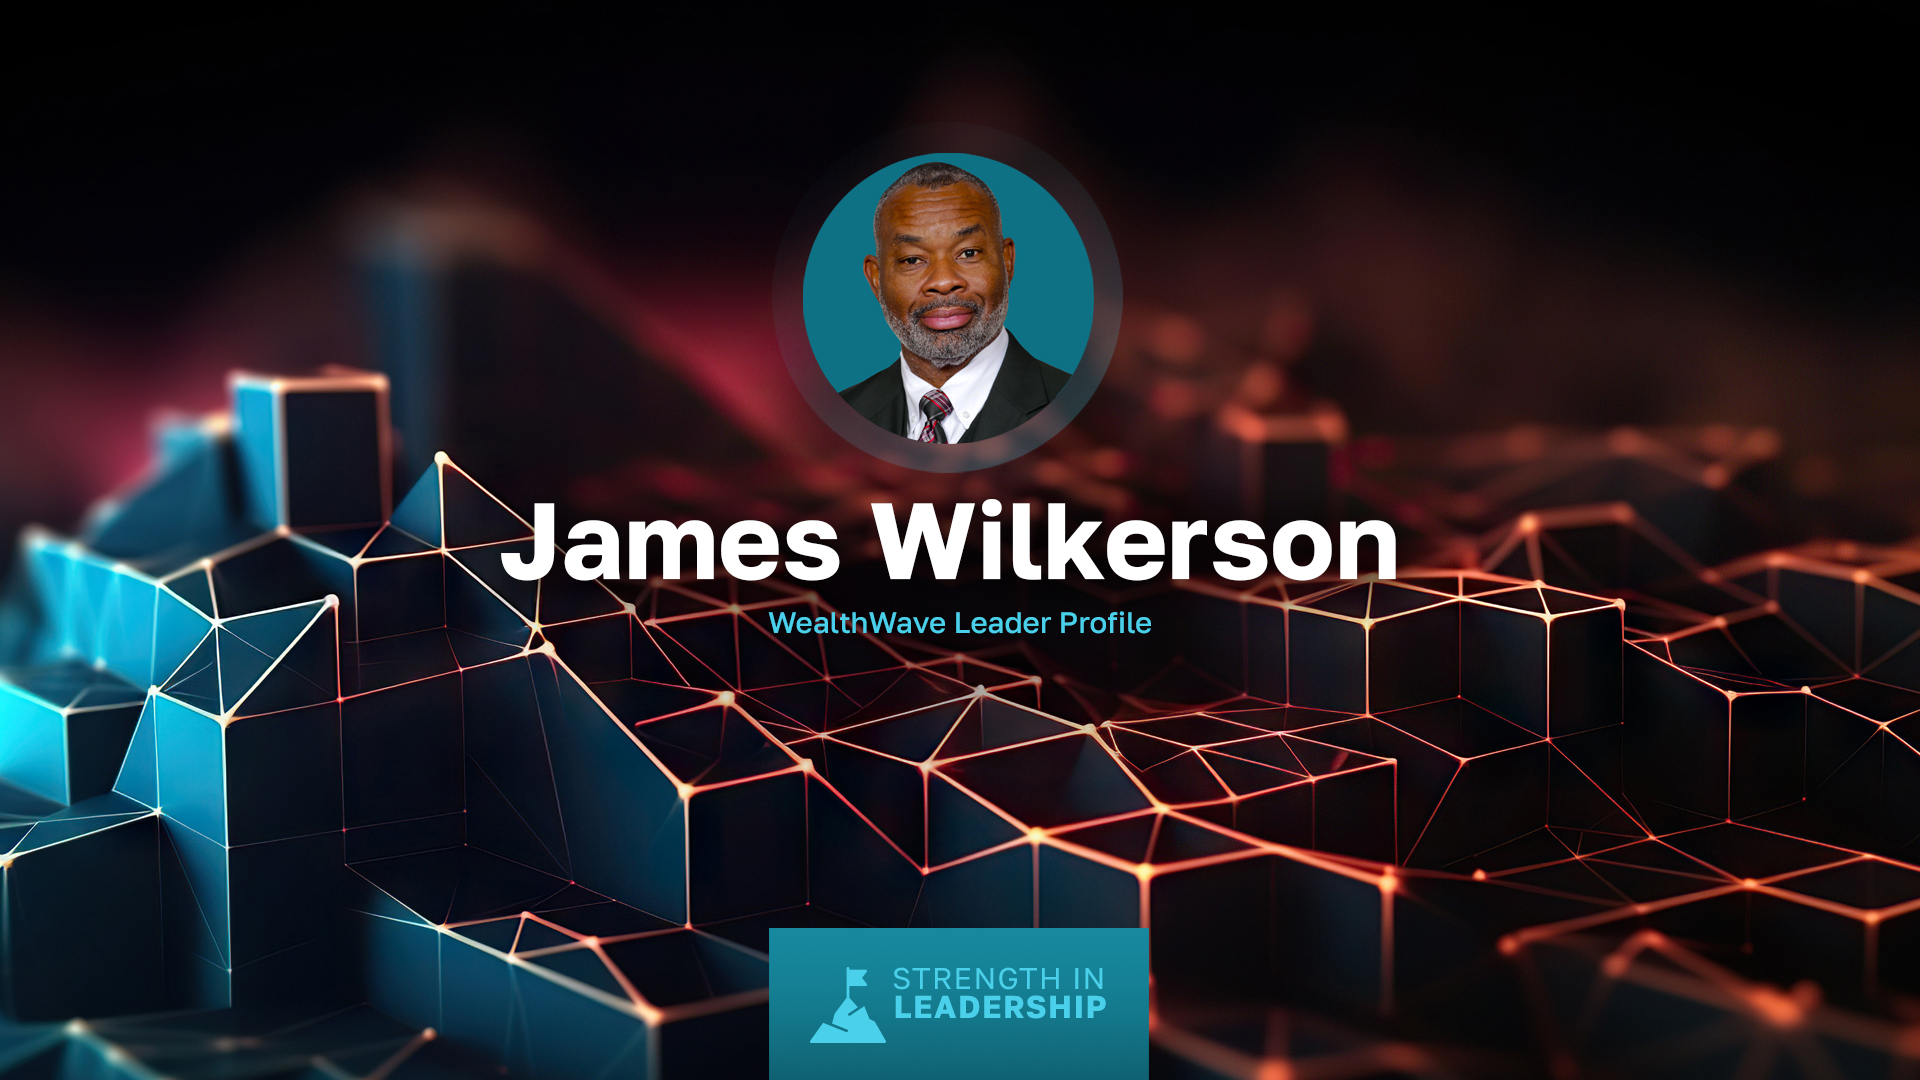 Профиль лидера: Джеймс Вилкерсон - от военно-морского офицера до лидера финансовой отрасли